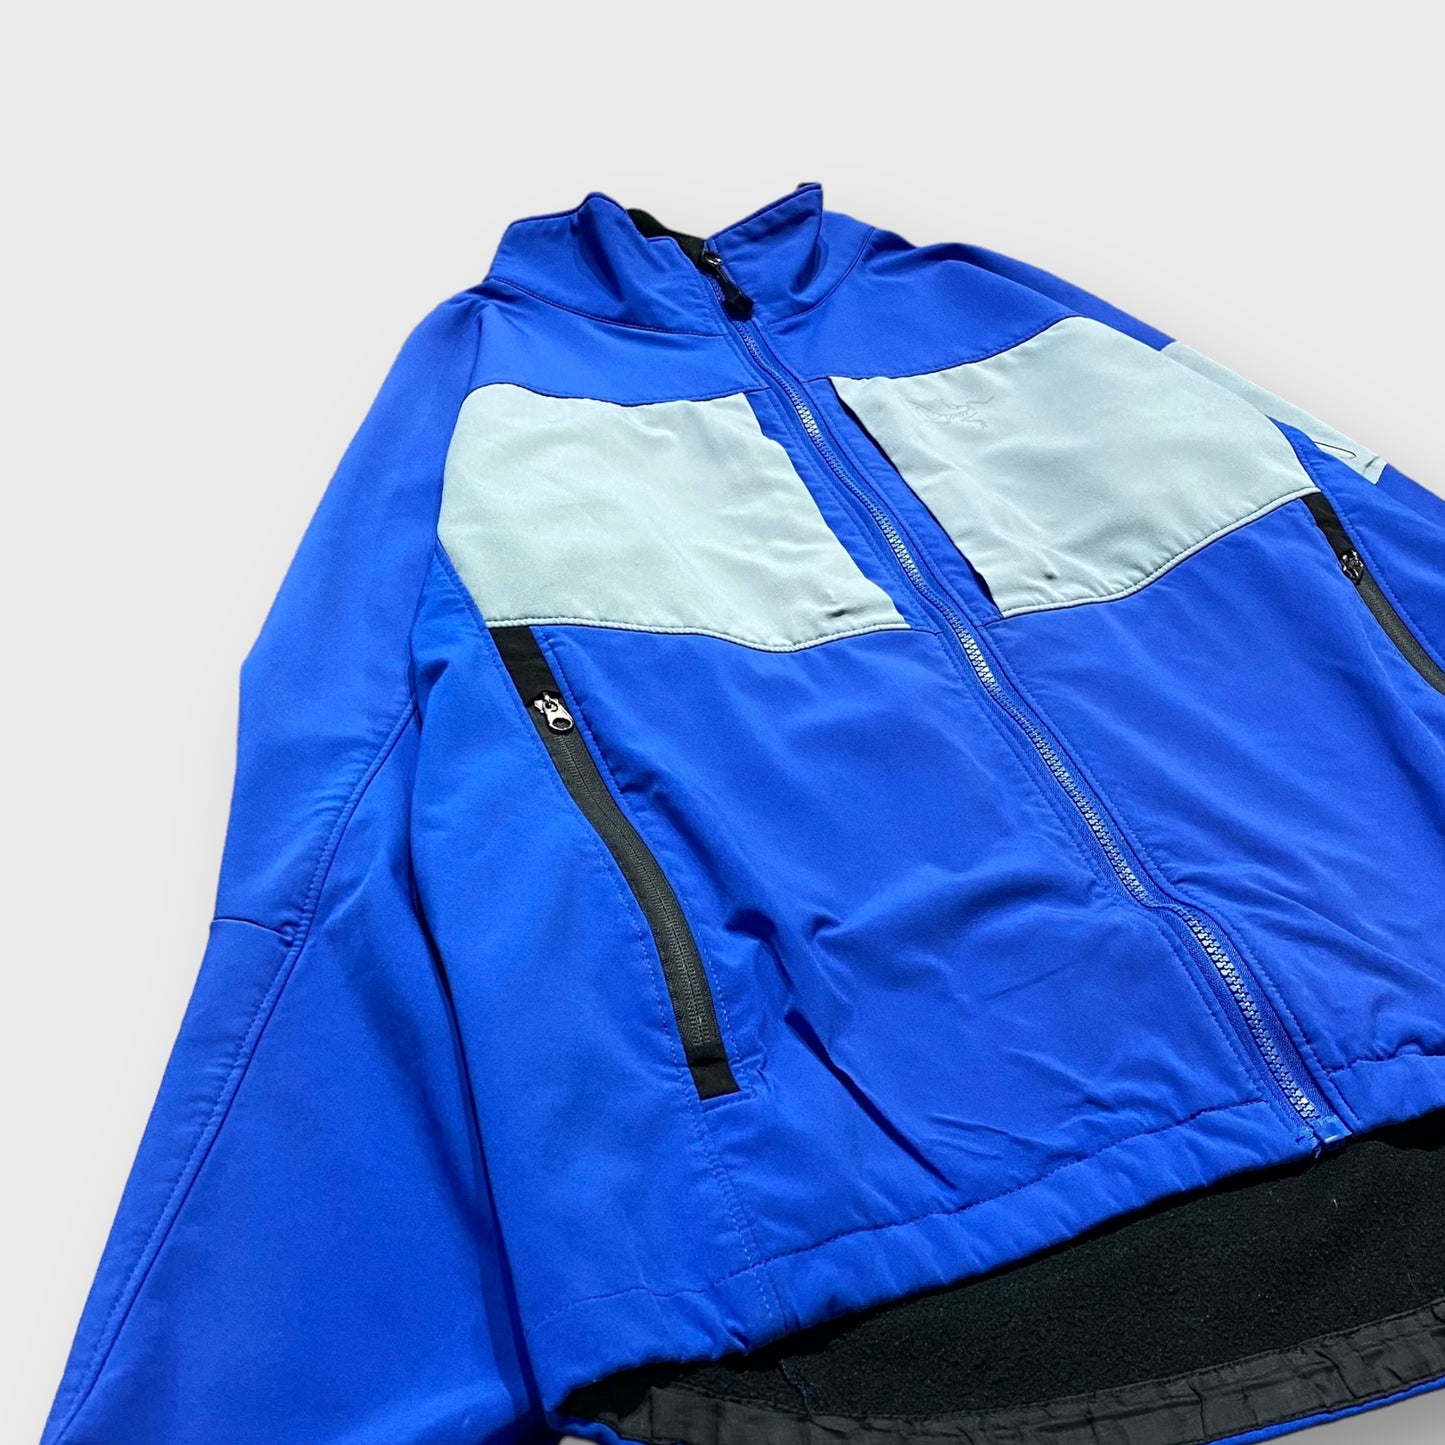 90-00's "Arc'teryx" Gamma jacket